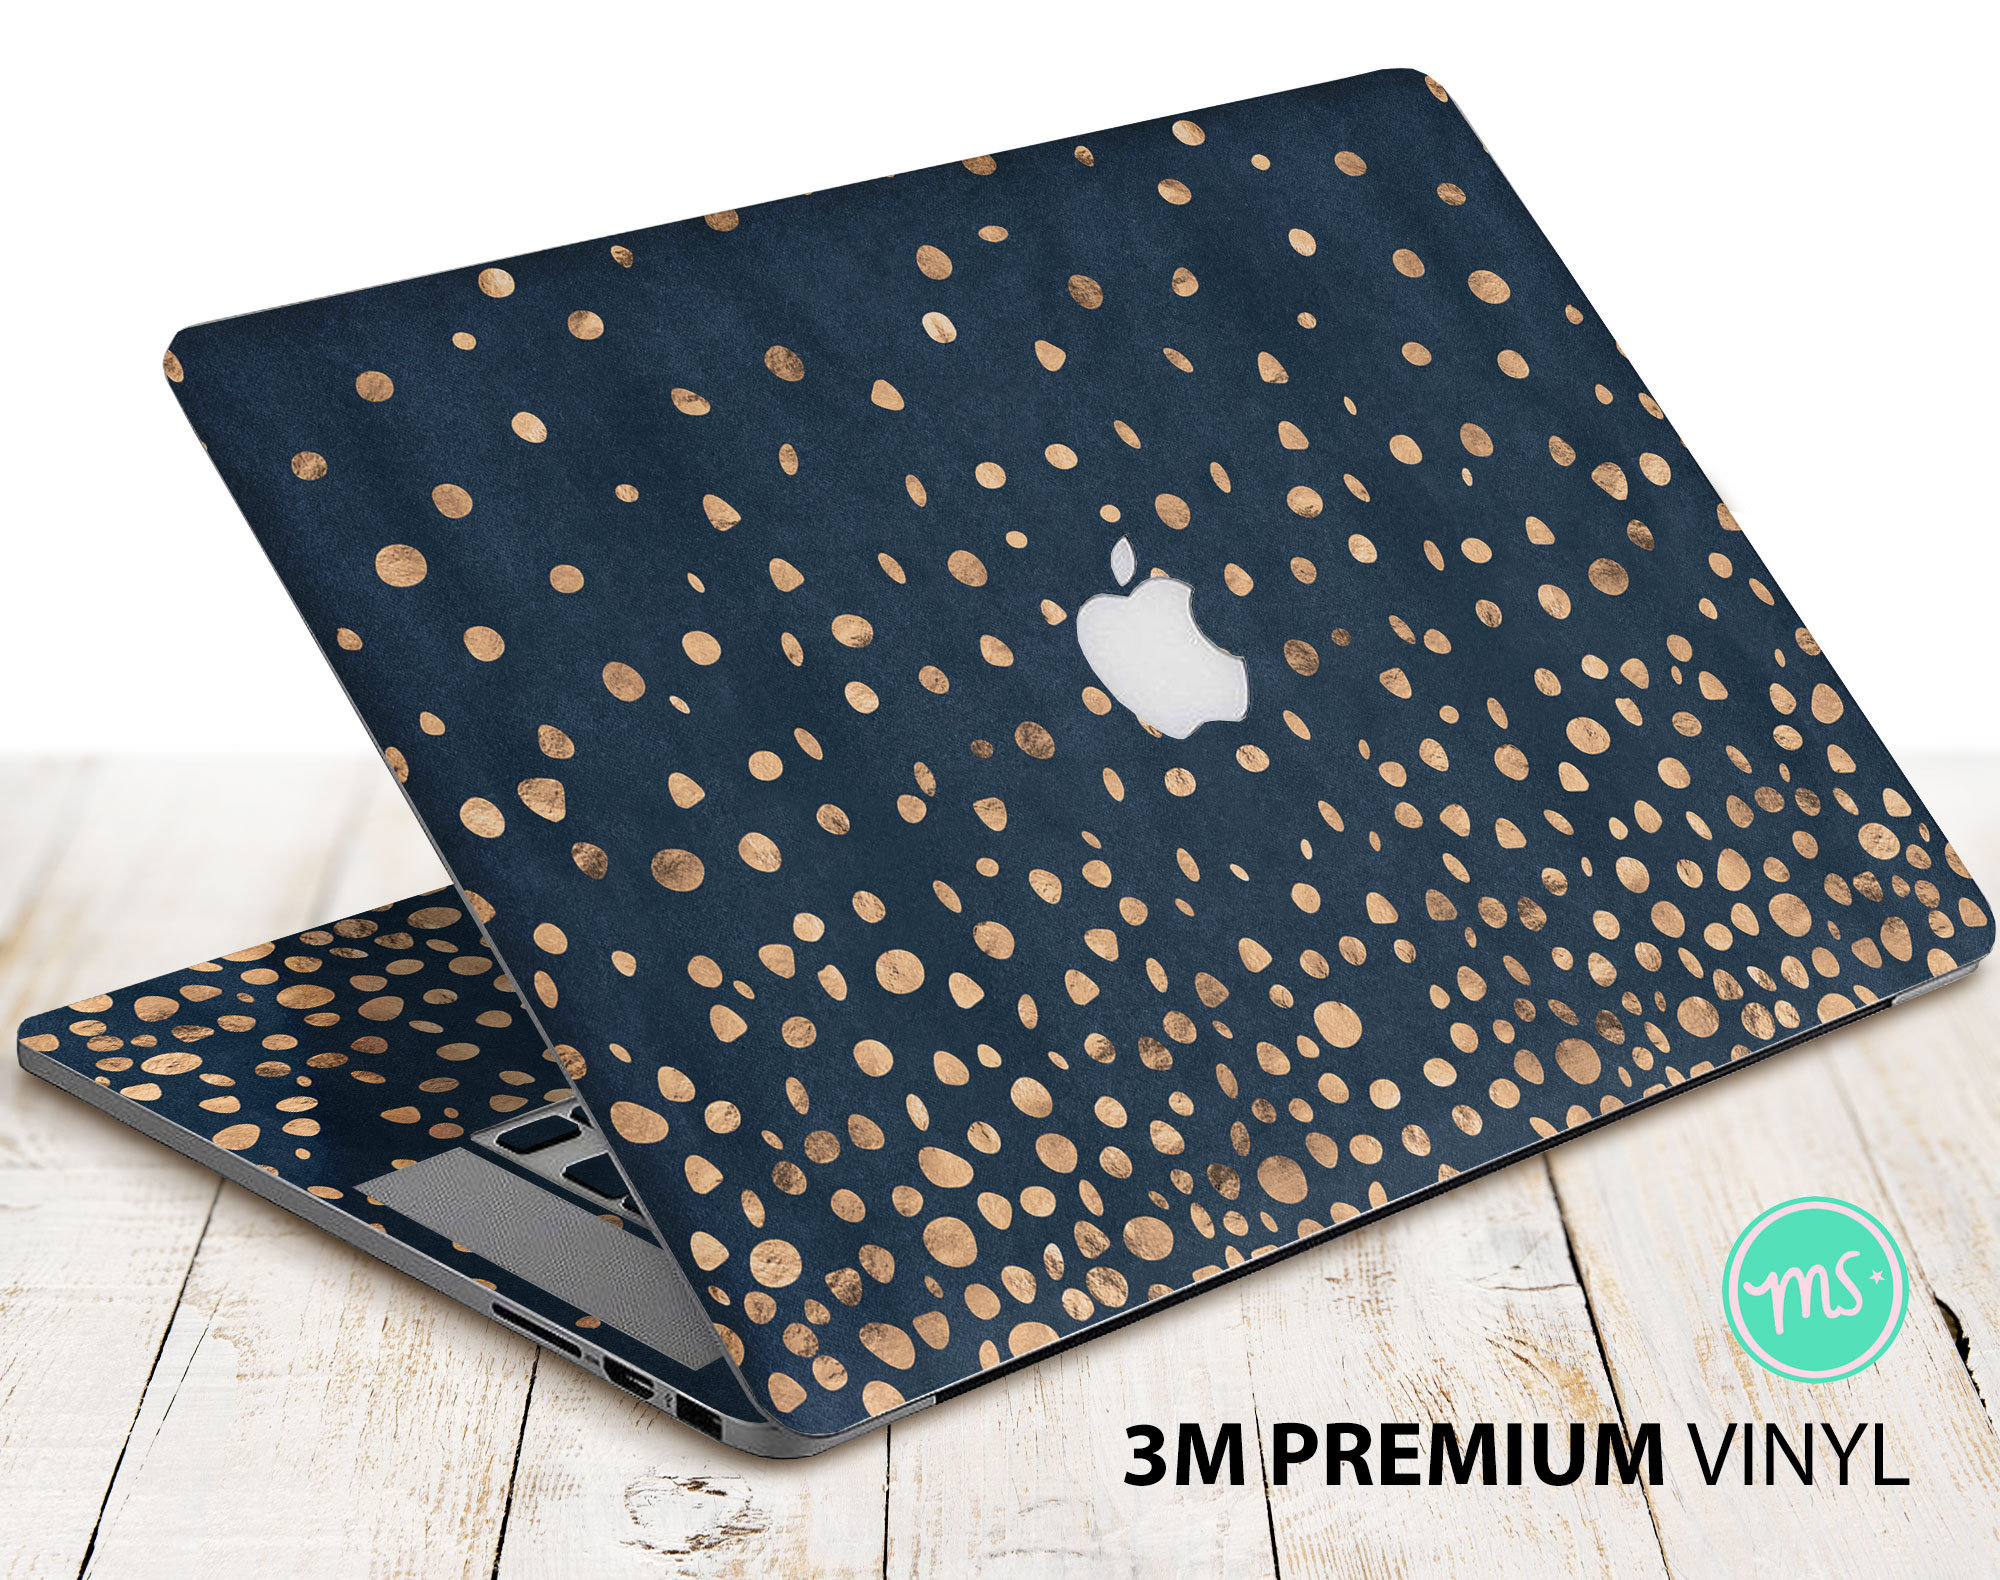 Laptop Folie Cover Abstrakt Klebefolie Notebook Aufkleber Schutzhülle  selbstklebend Vinyl Skin Sticker: : Computer & Zubehör